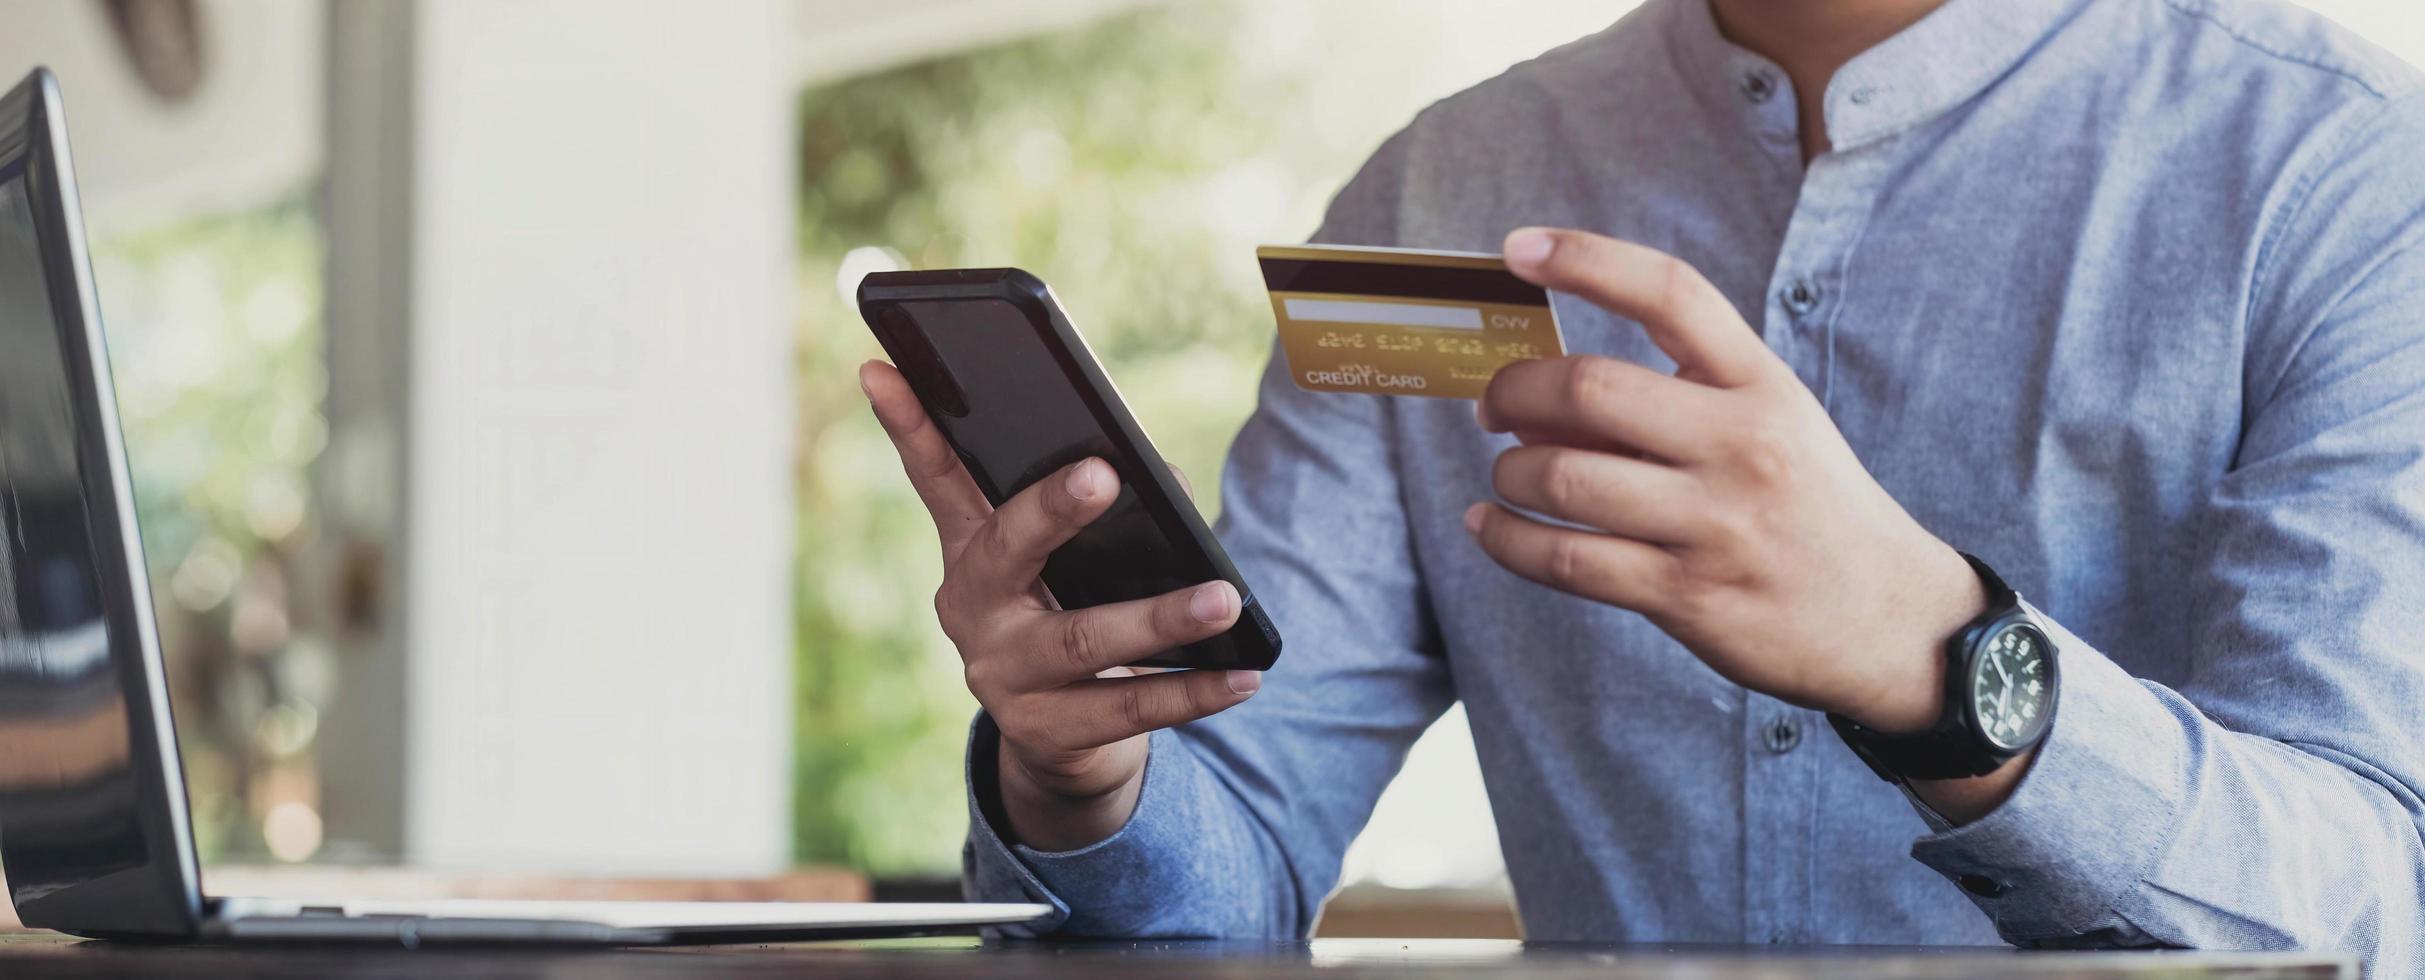 pago en línea, manos del hombre sosteniendo el teléfono inteligente y usando tarjeta de crédito para compras en línea. concepto de cyber monday foto